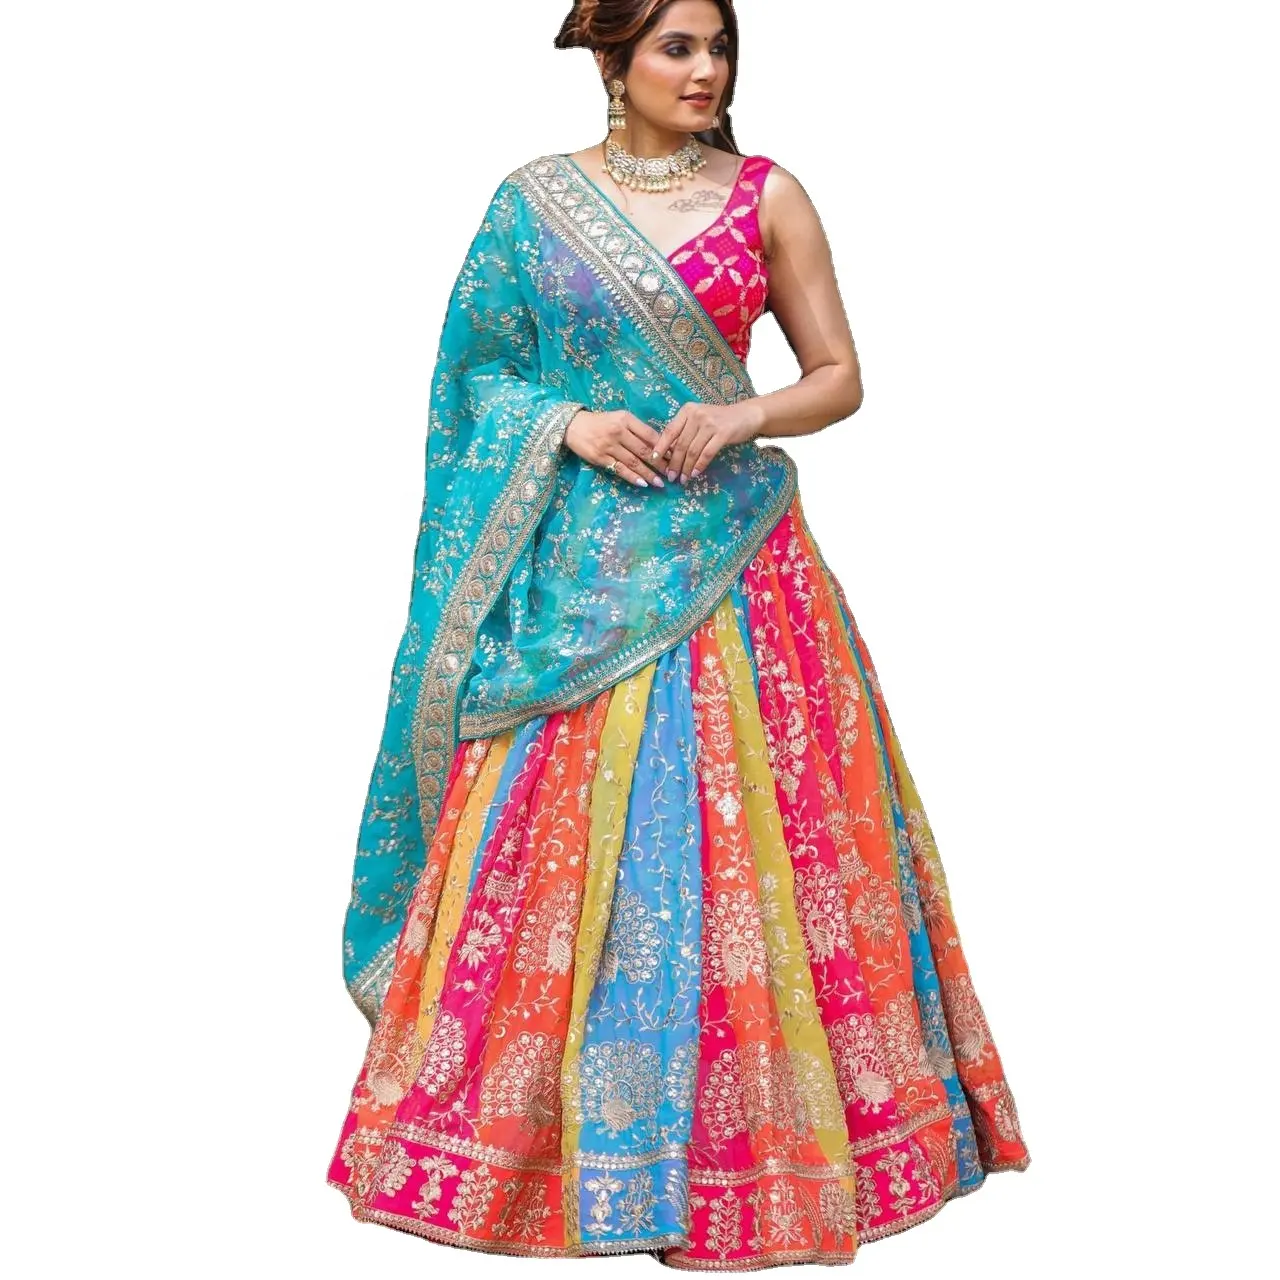 FULPARI, новинка, в индийском стиле, с вышивкой, привлекательная одежда для вечеринок, Lehenga choli имеет обычную форму и изготовлен из высококачественной ткани